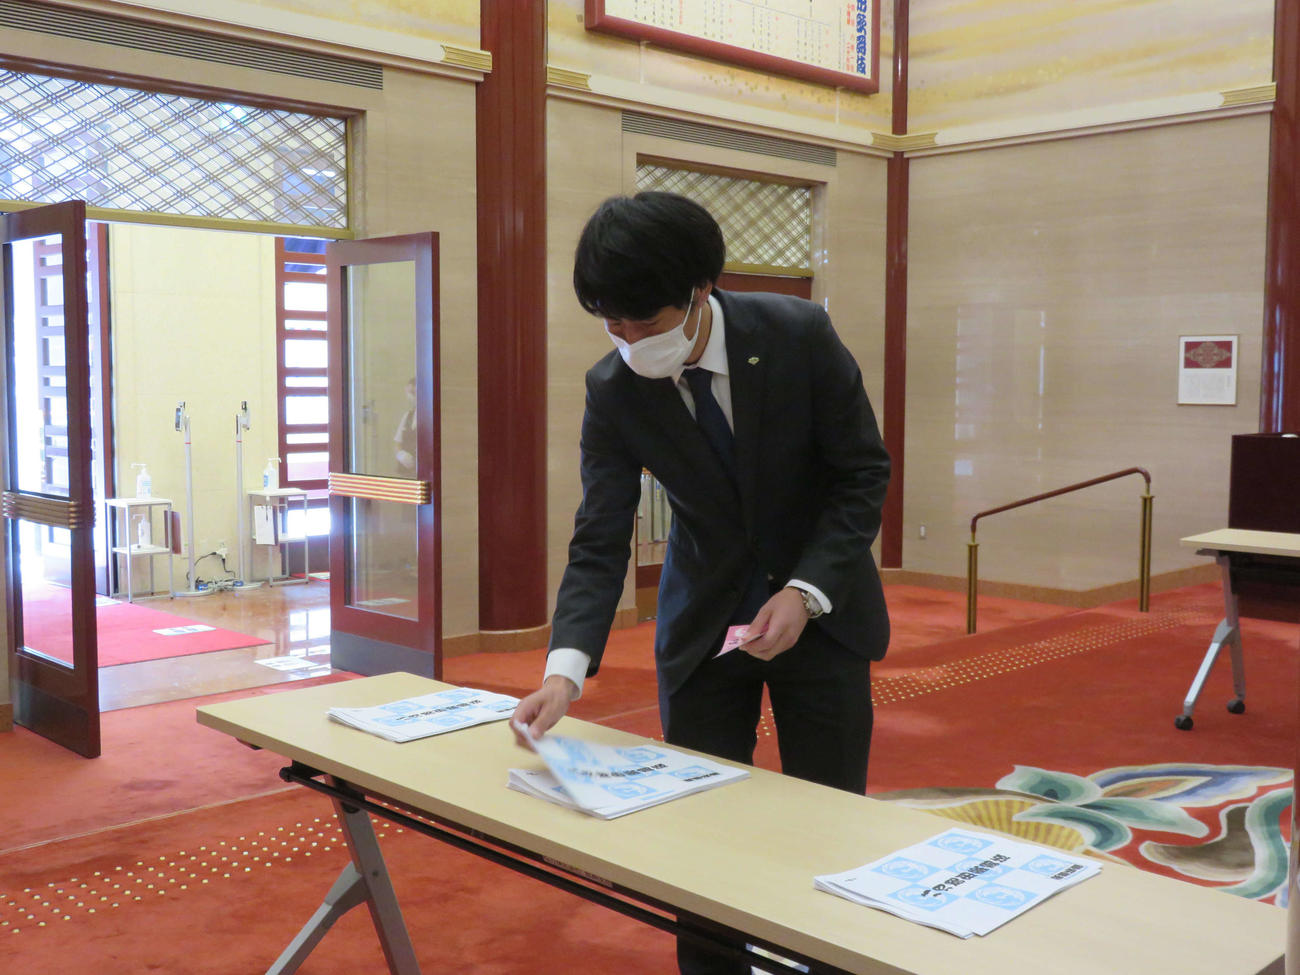 歌舞伎座「八月花形歌舞伎」の初日を前に、新型コロナウイルス感染防止対策が公開された。チケットをもぎる係はおらず、観客は自分で公演あらすじを取る